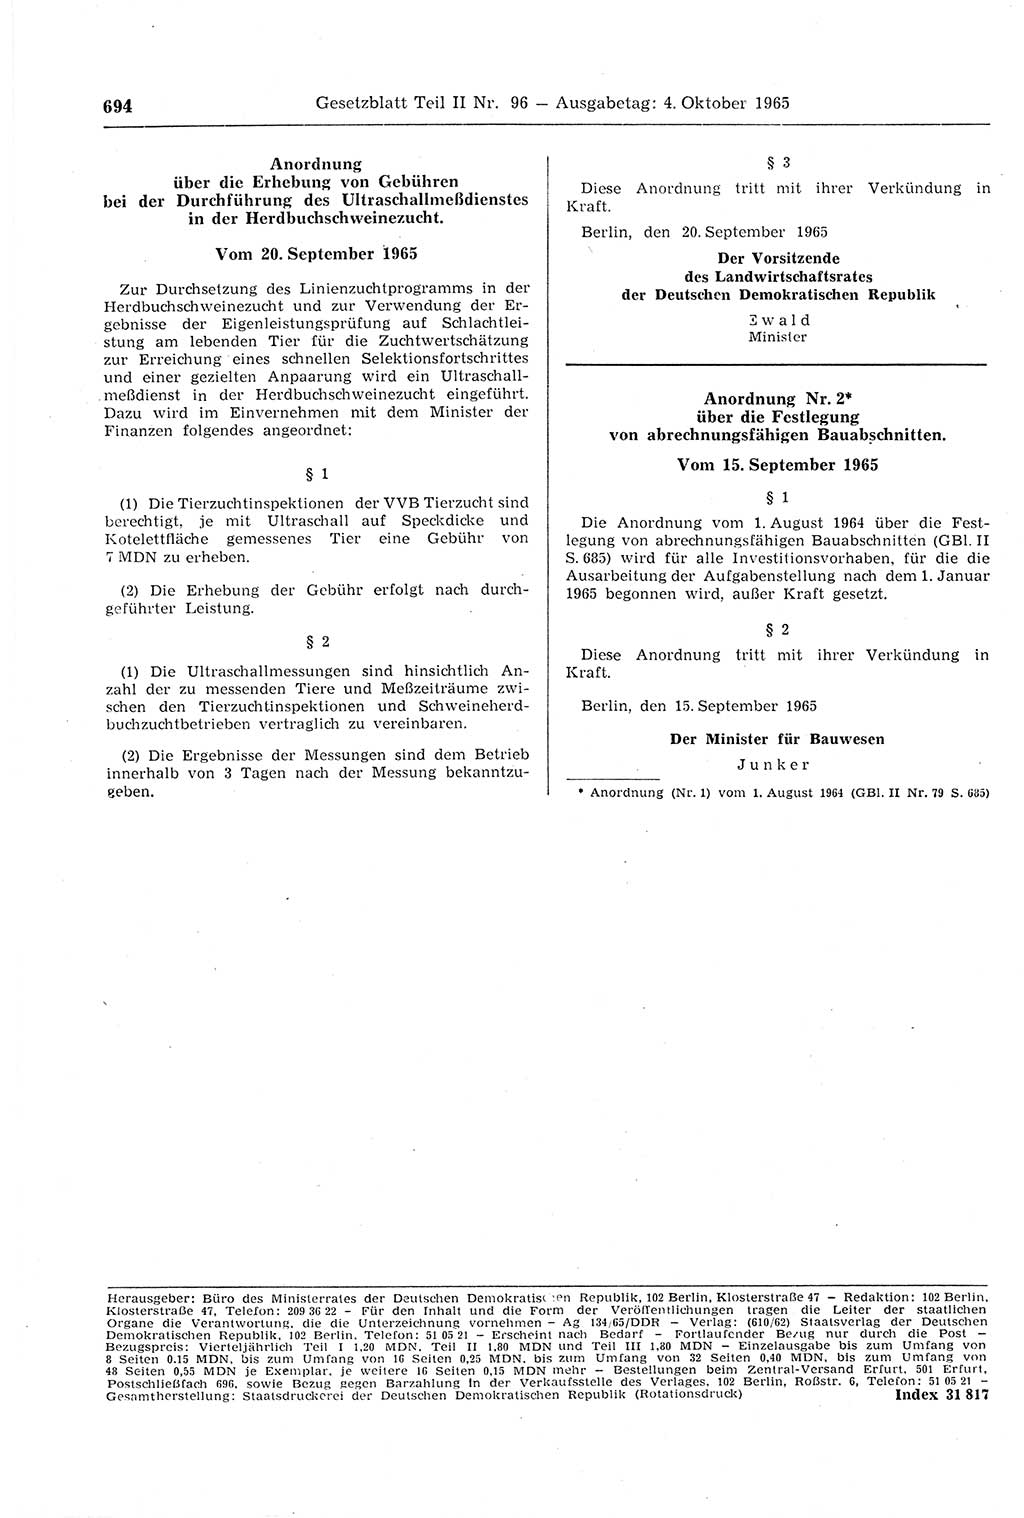 Gesetzblatt (GBl.) der Deutschen Demokratischen Republik (DDR) Teil ⅠⅠ 1965, Seite 694 (GBl. DDR ⅠⅠ 1965, S. 694)